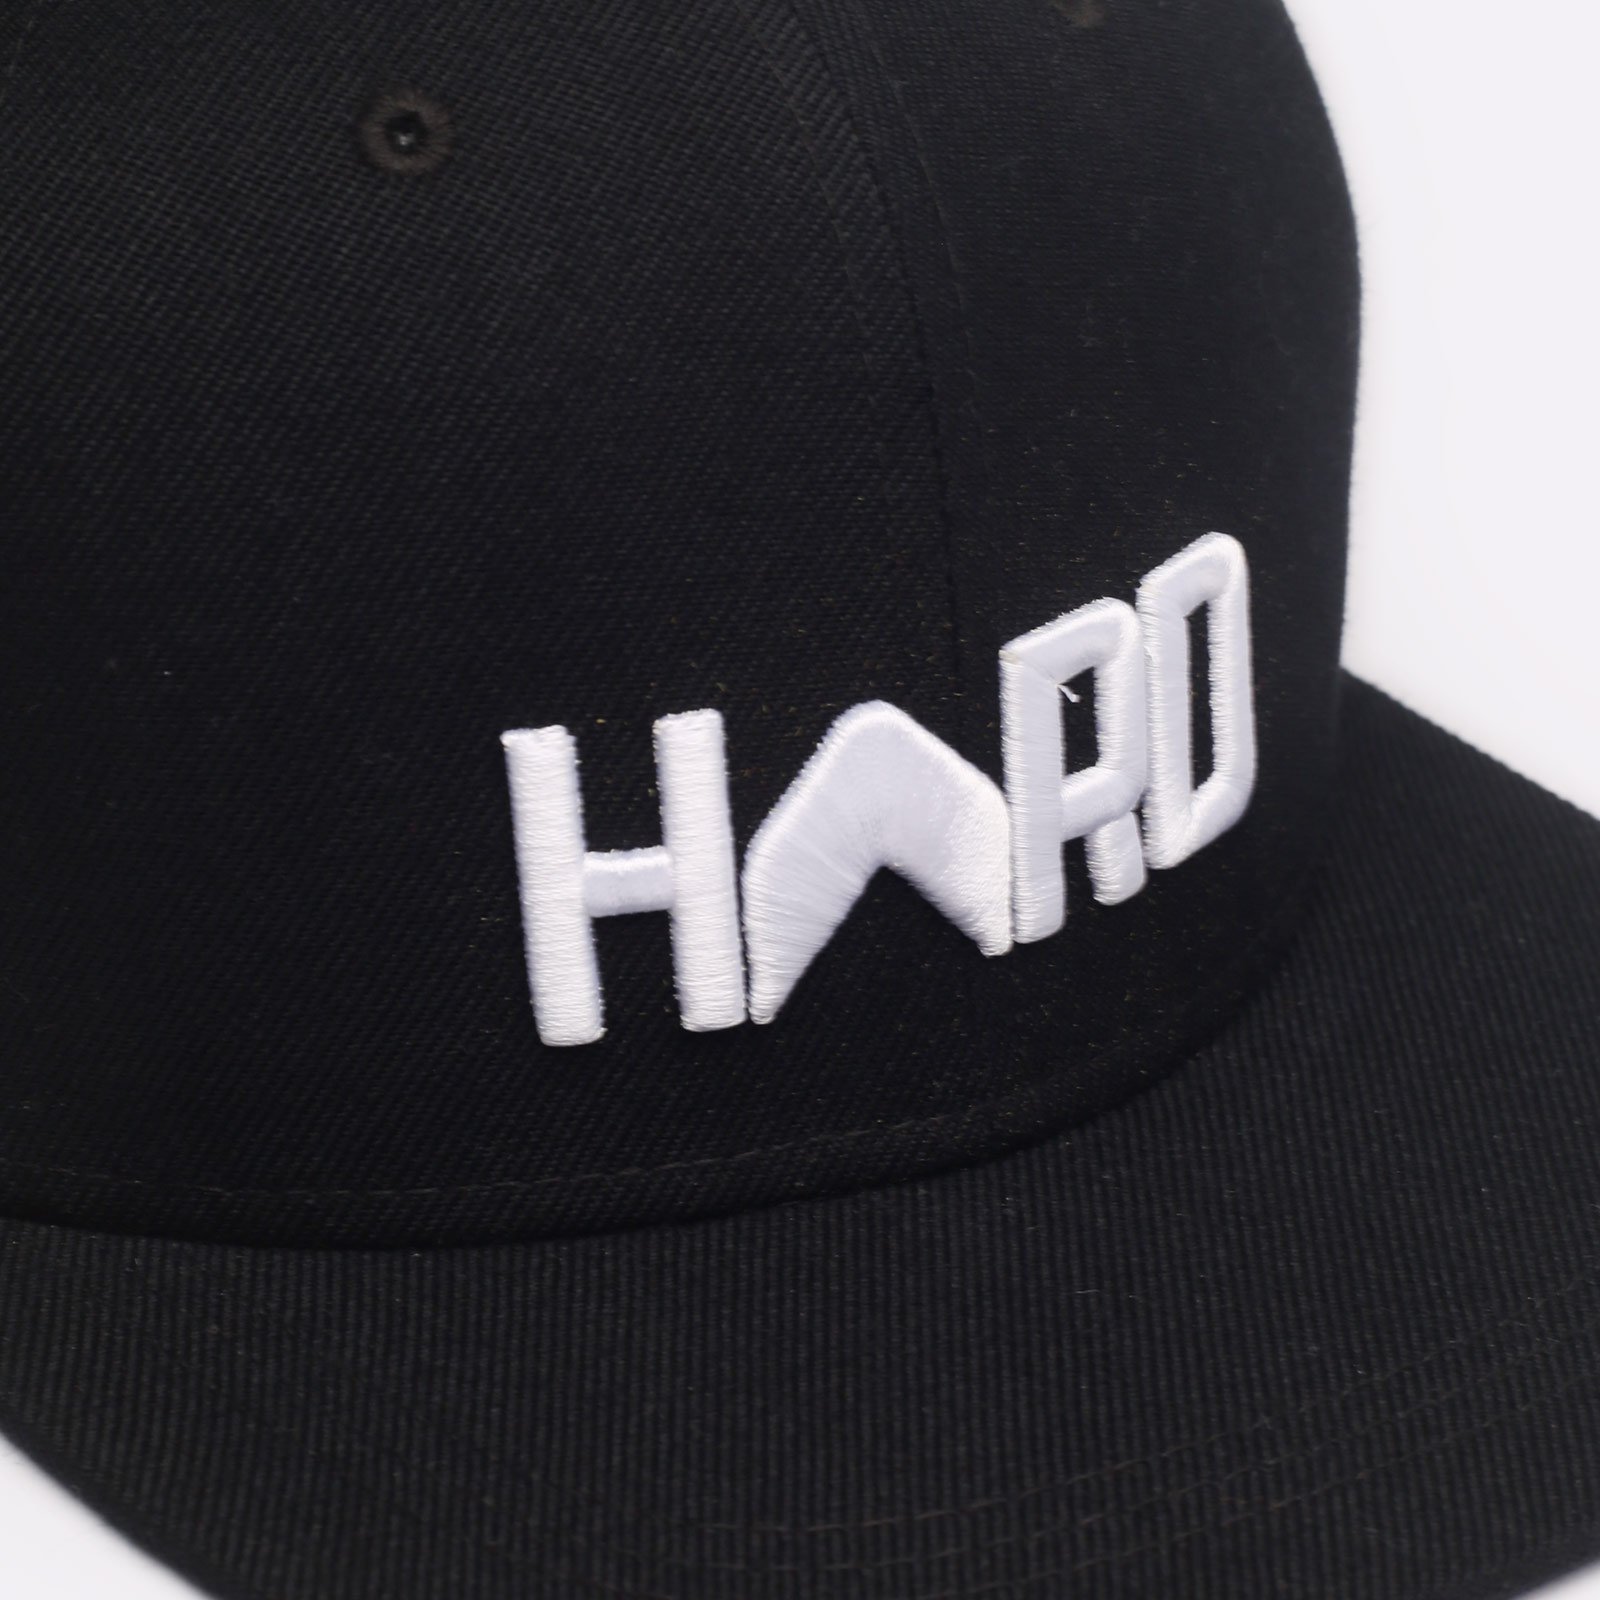 мужская кепка Hard Logo Snapback  (Hard black/wht-0106)  - цена, описание, фото 3